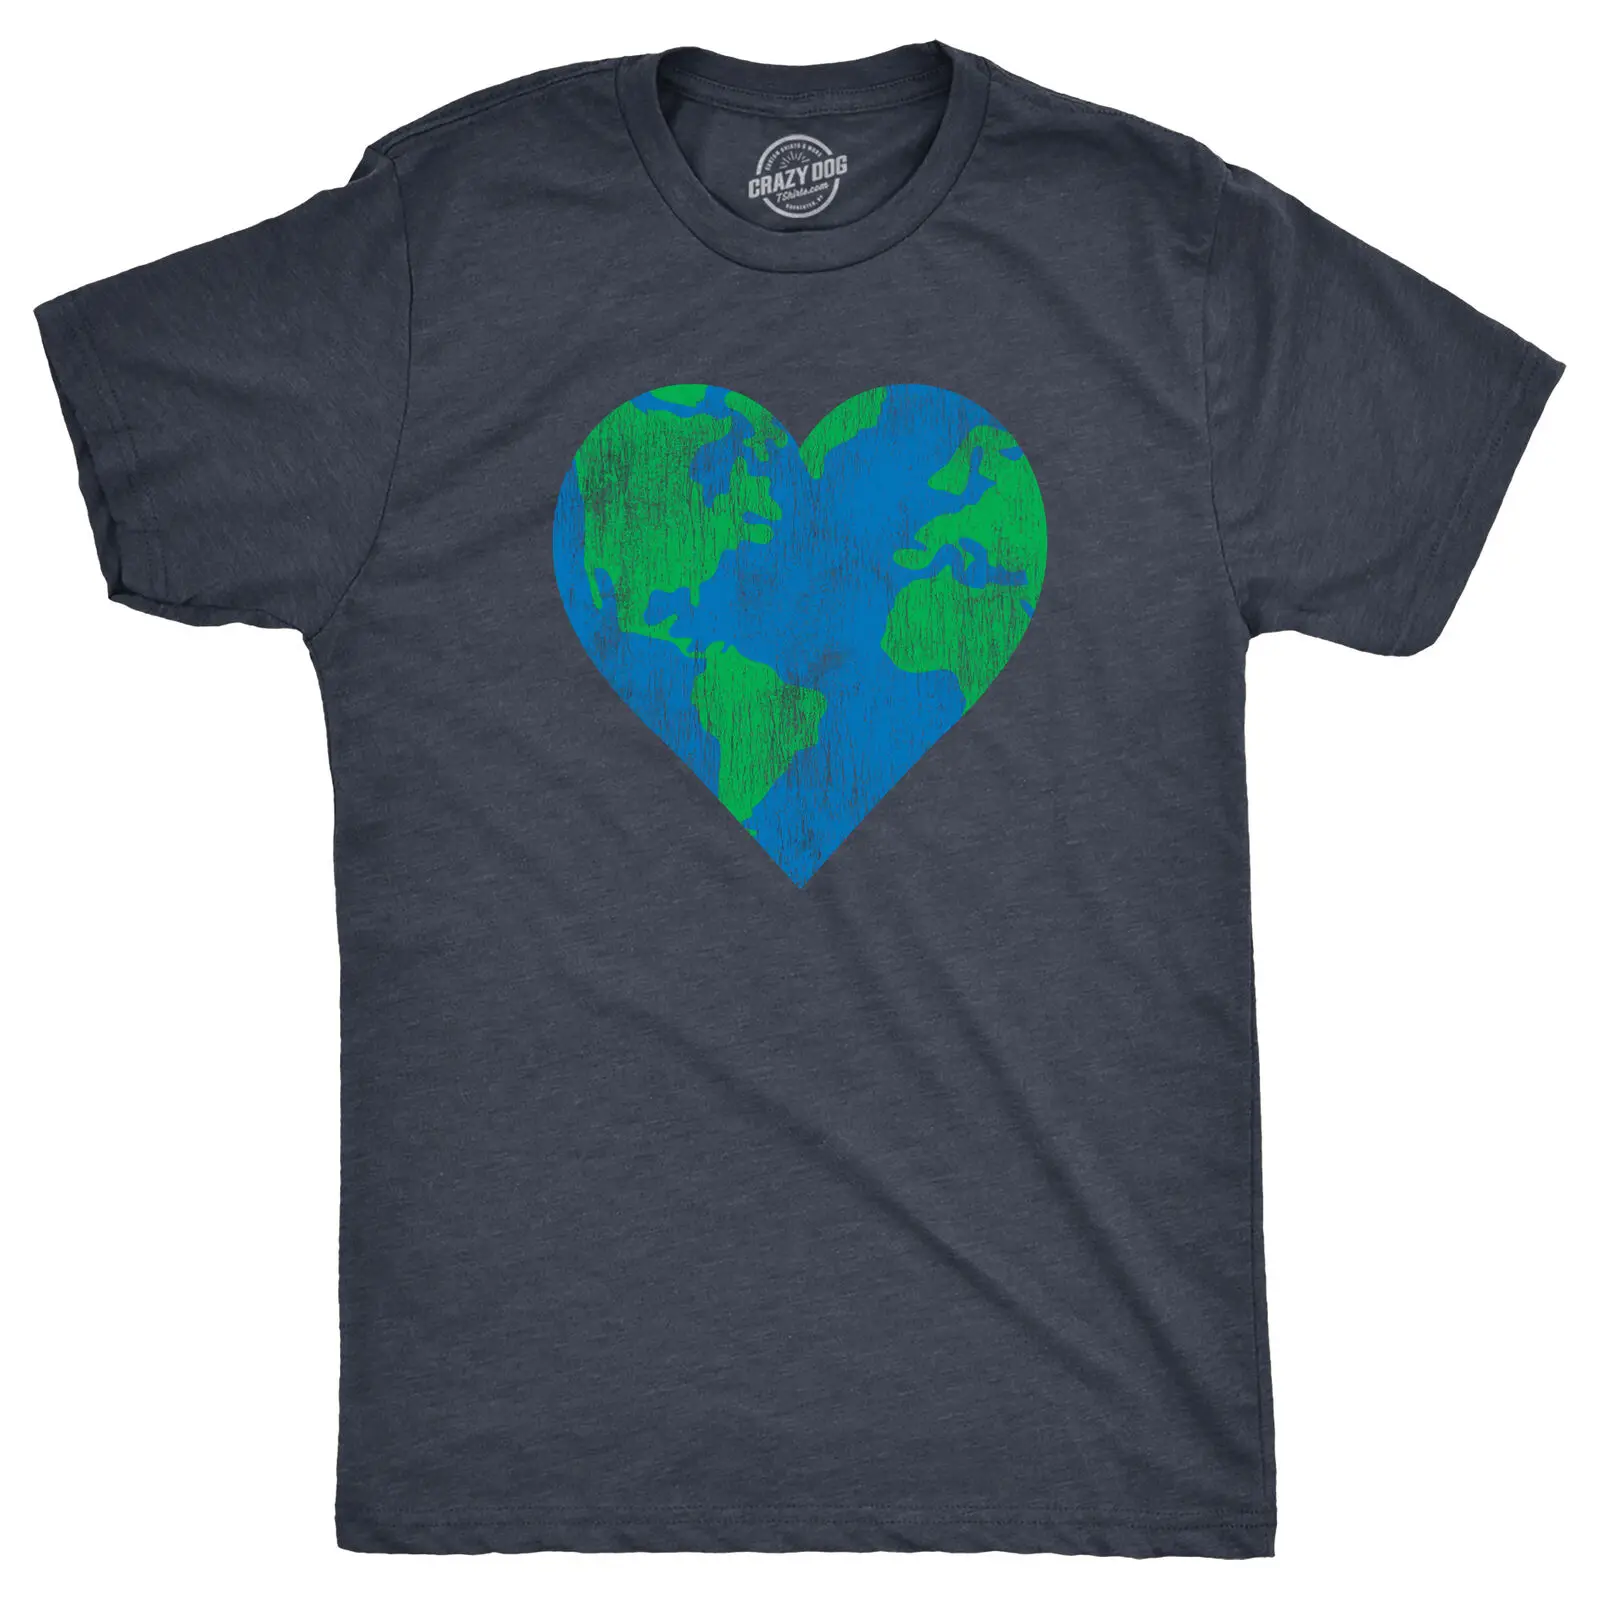 Мужская футболка с сердцем Земли Забавная потрясающая футболка для любителей природы ко Дню Земли для парней